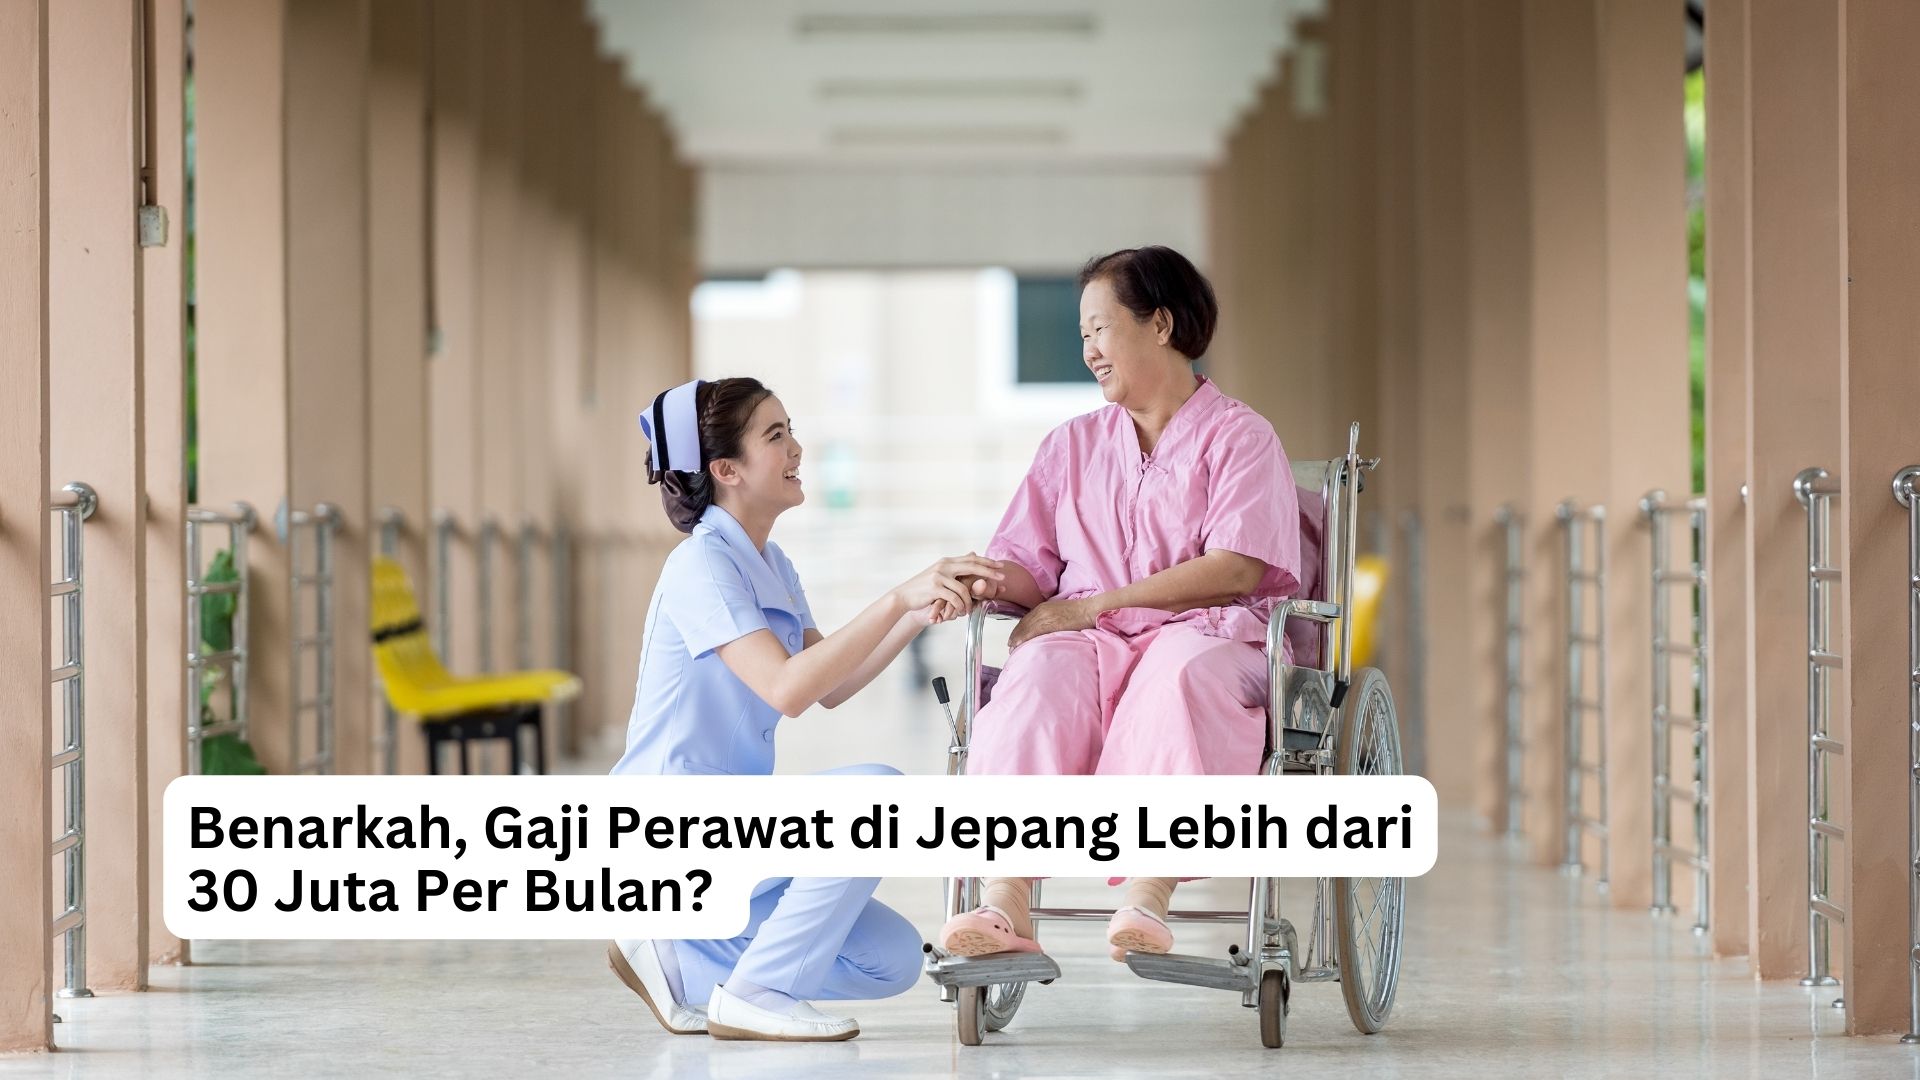 You are currently viewing Benarkah, Gaji Perawat di Jepang Lebih dari Rp30 Juta Per Bulan? 